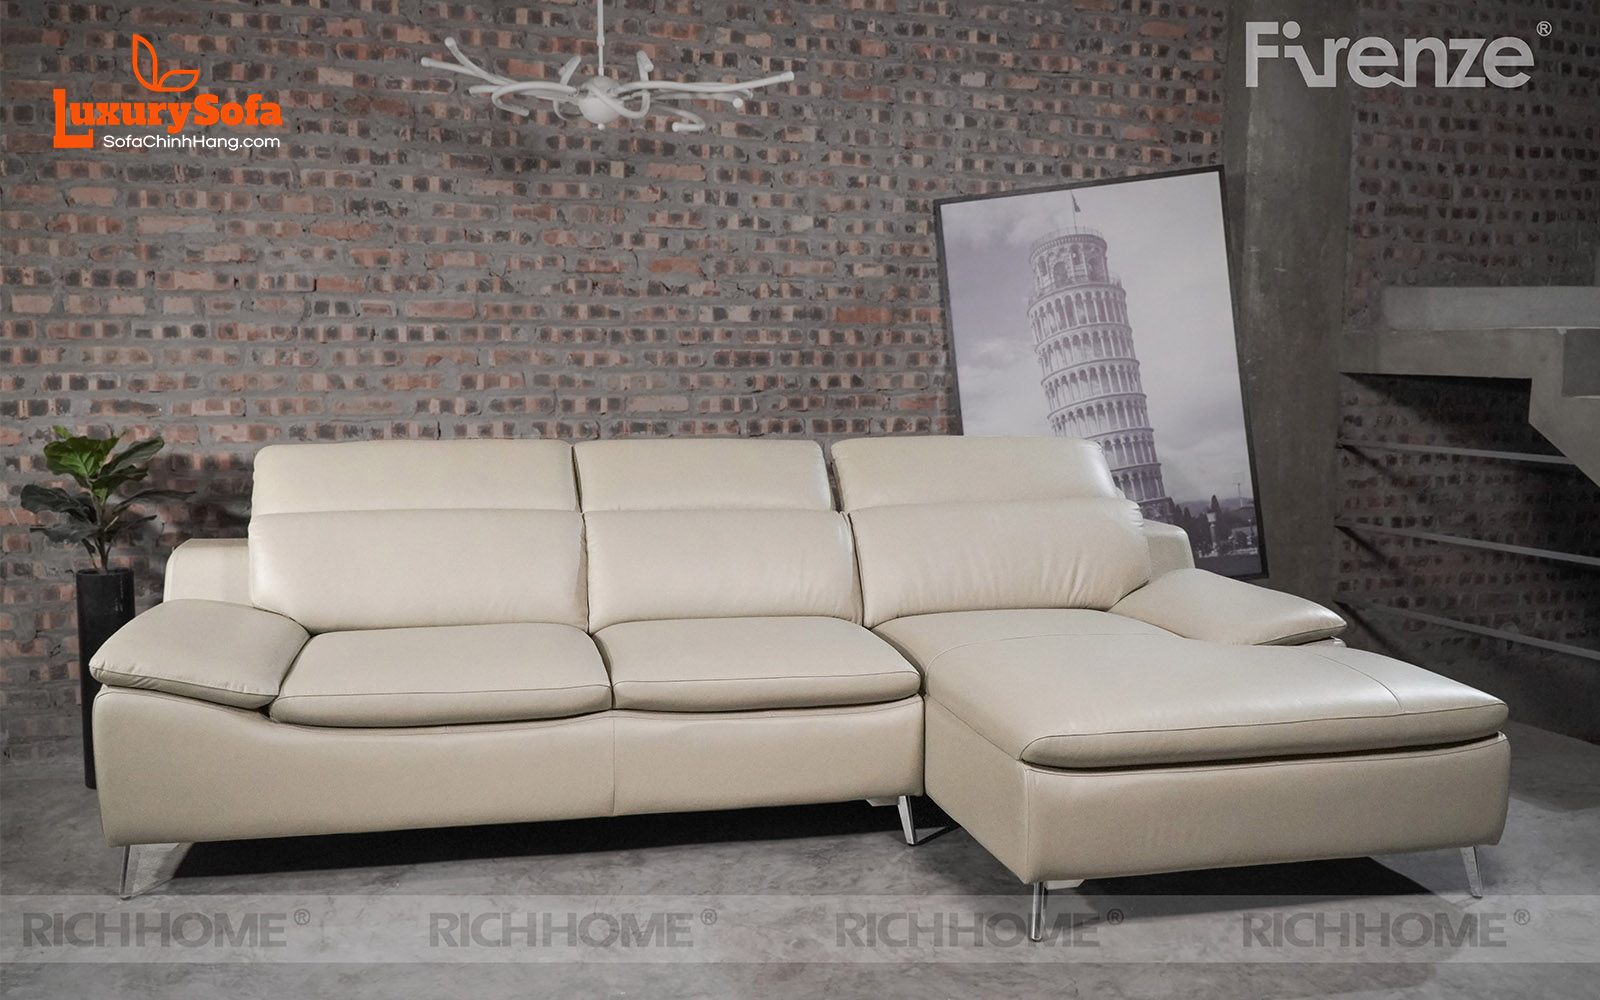 Các mẫu sofa cho căn hộ nhỏ diện tích 25m2